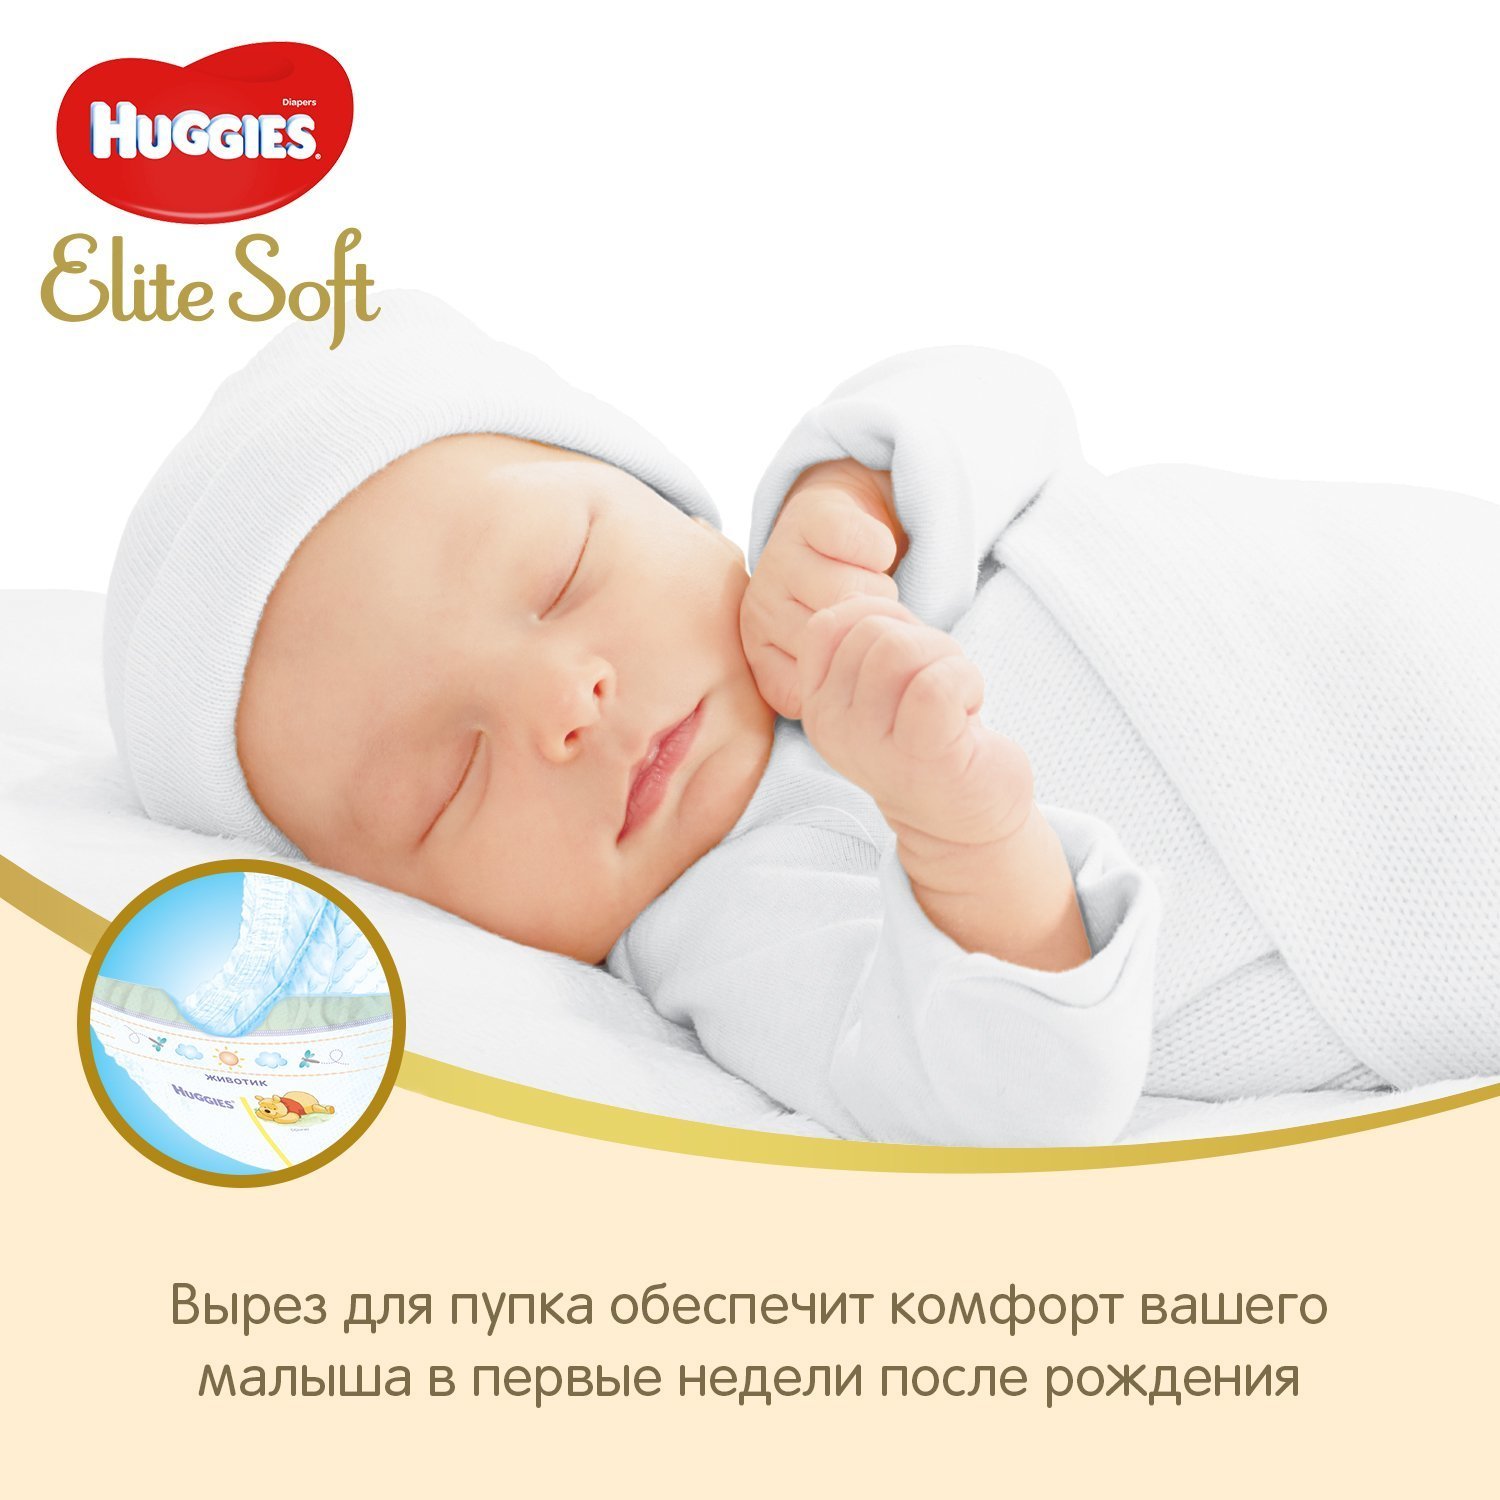 Подгузники Huggies Elite Soft для новорожденных 0 до 3.5кг 50шт